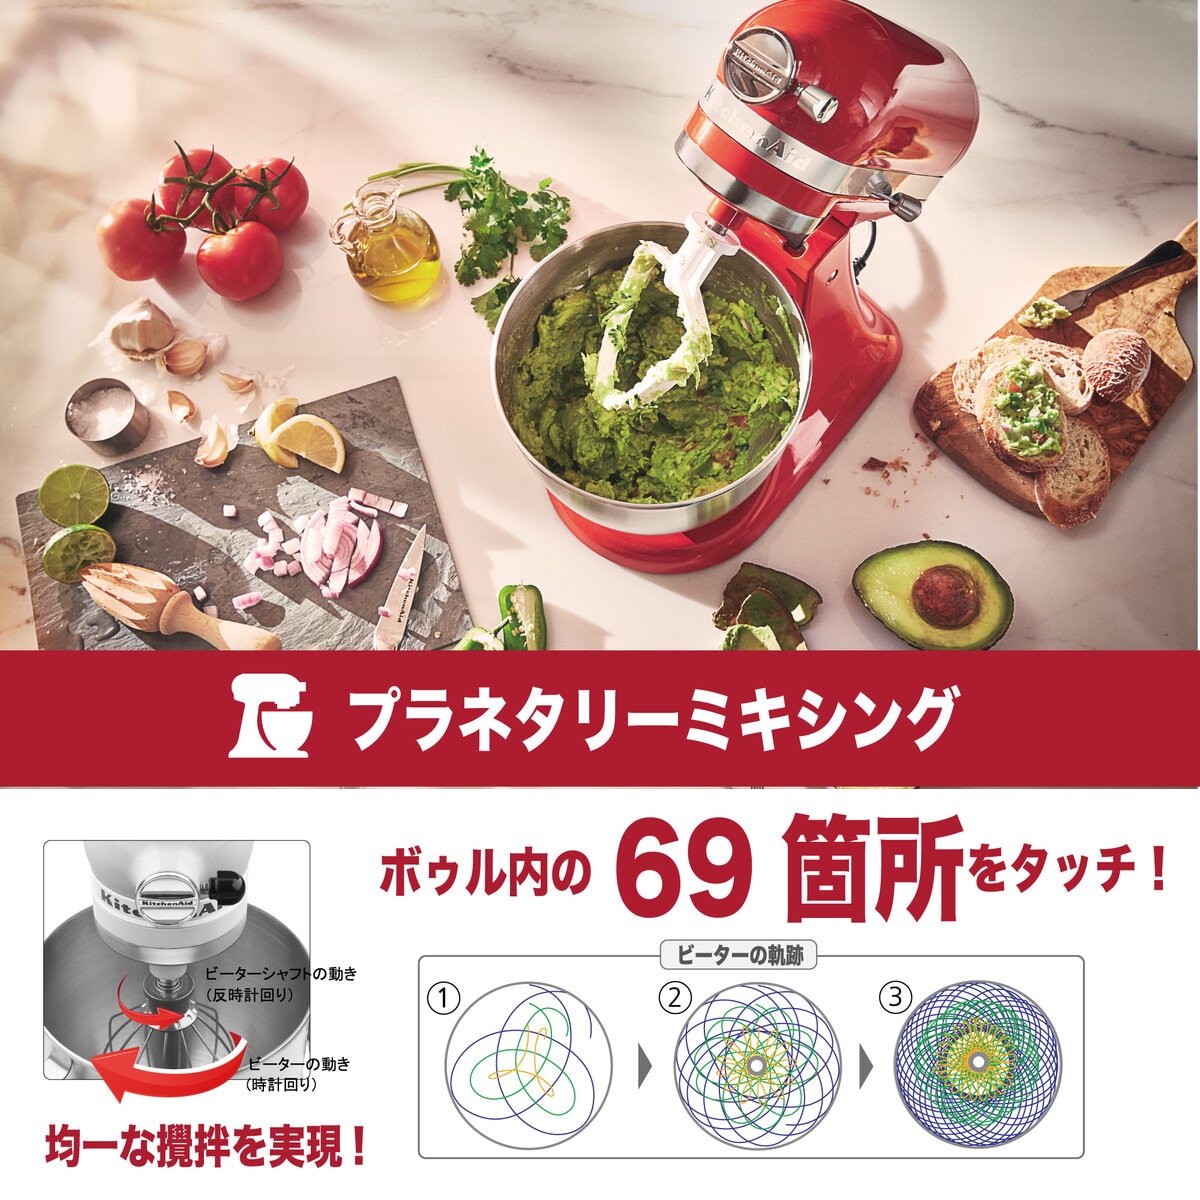 キッチンエイド アルチザン ミニ スタンドミキサー 3.3L | Costco Japan